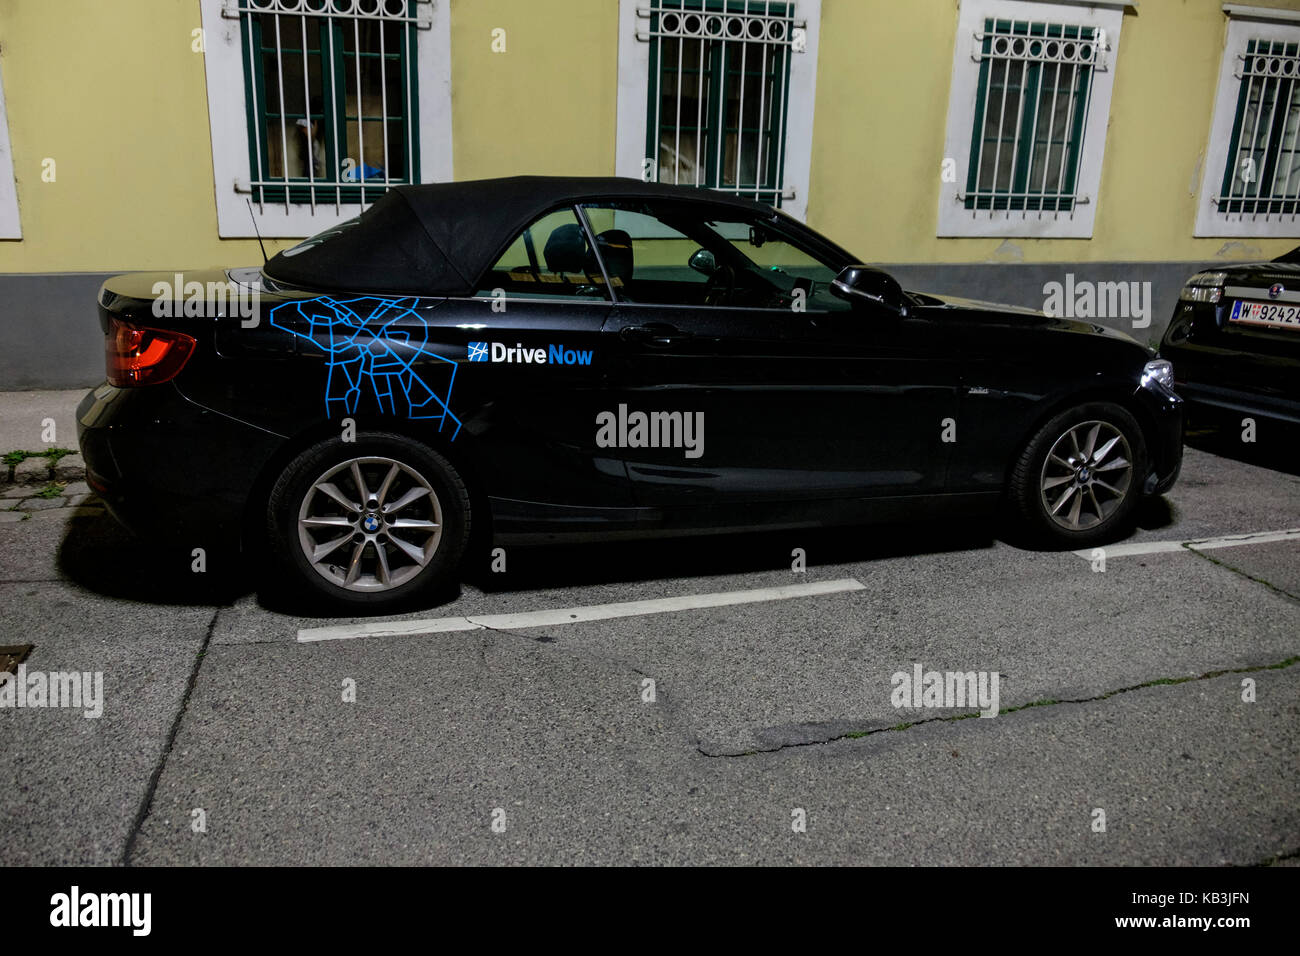 DriveNow car sharing BMW Foto Stock